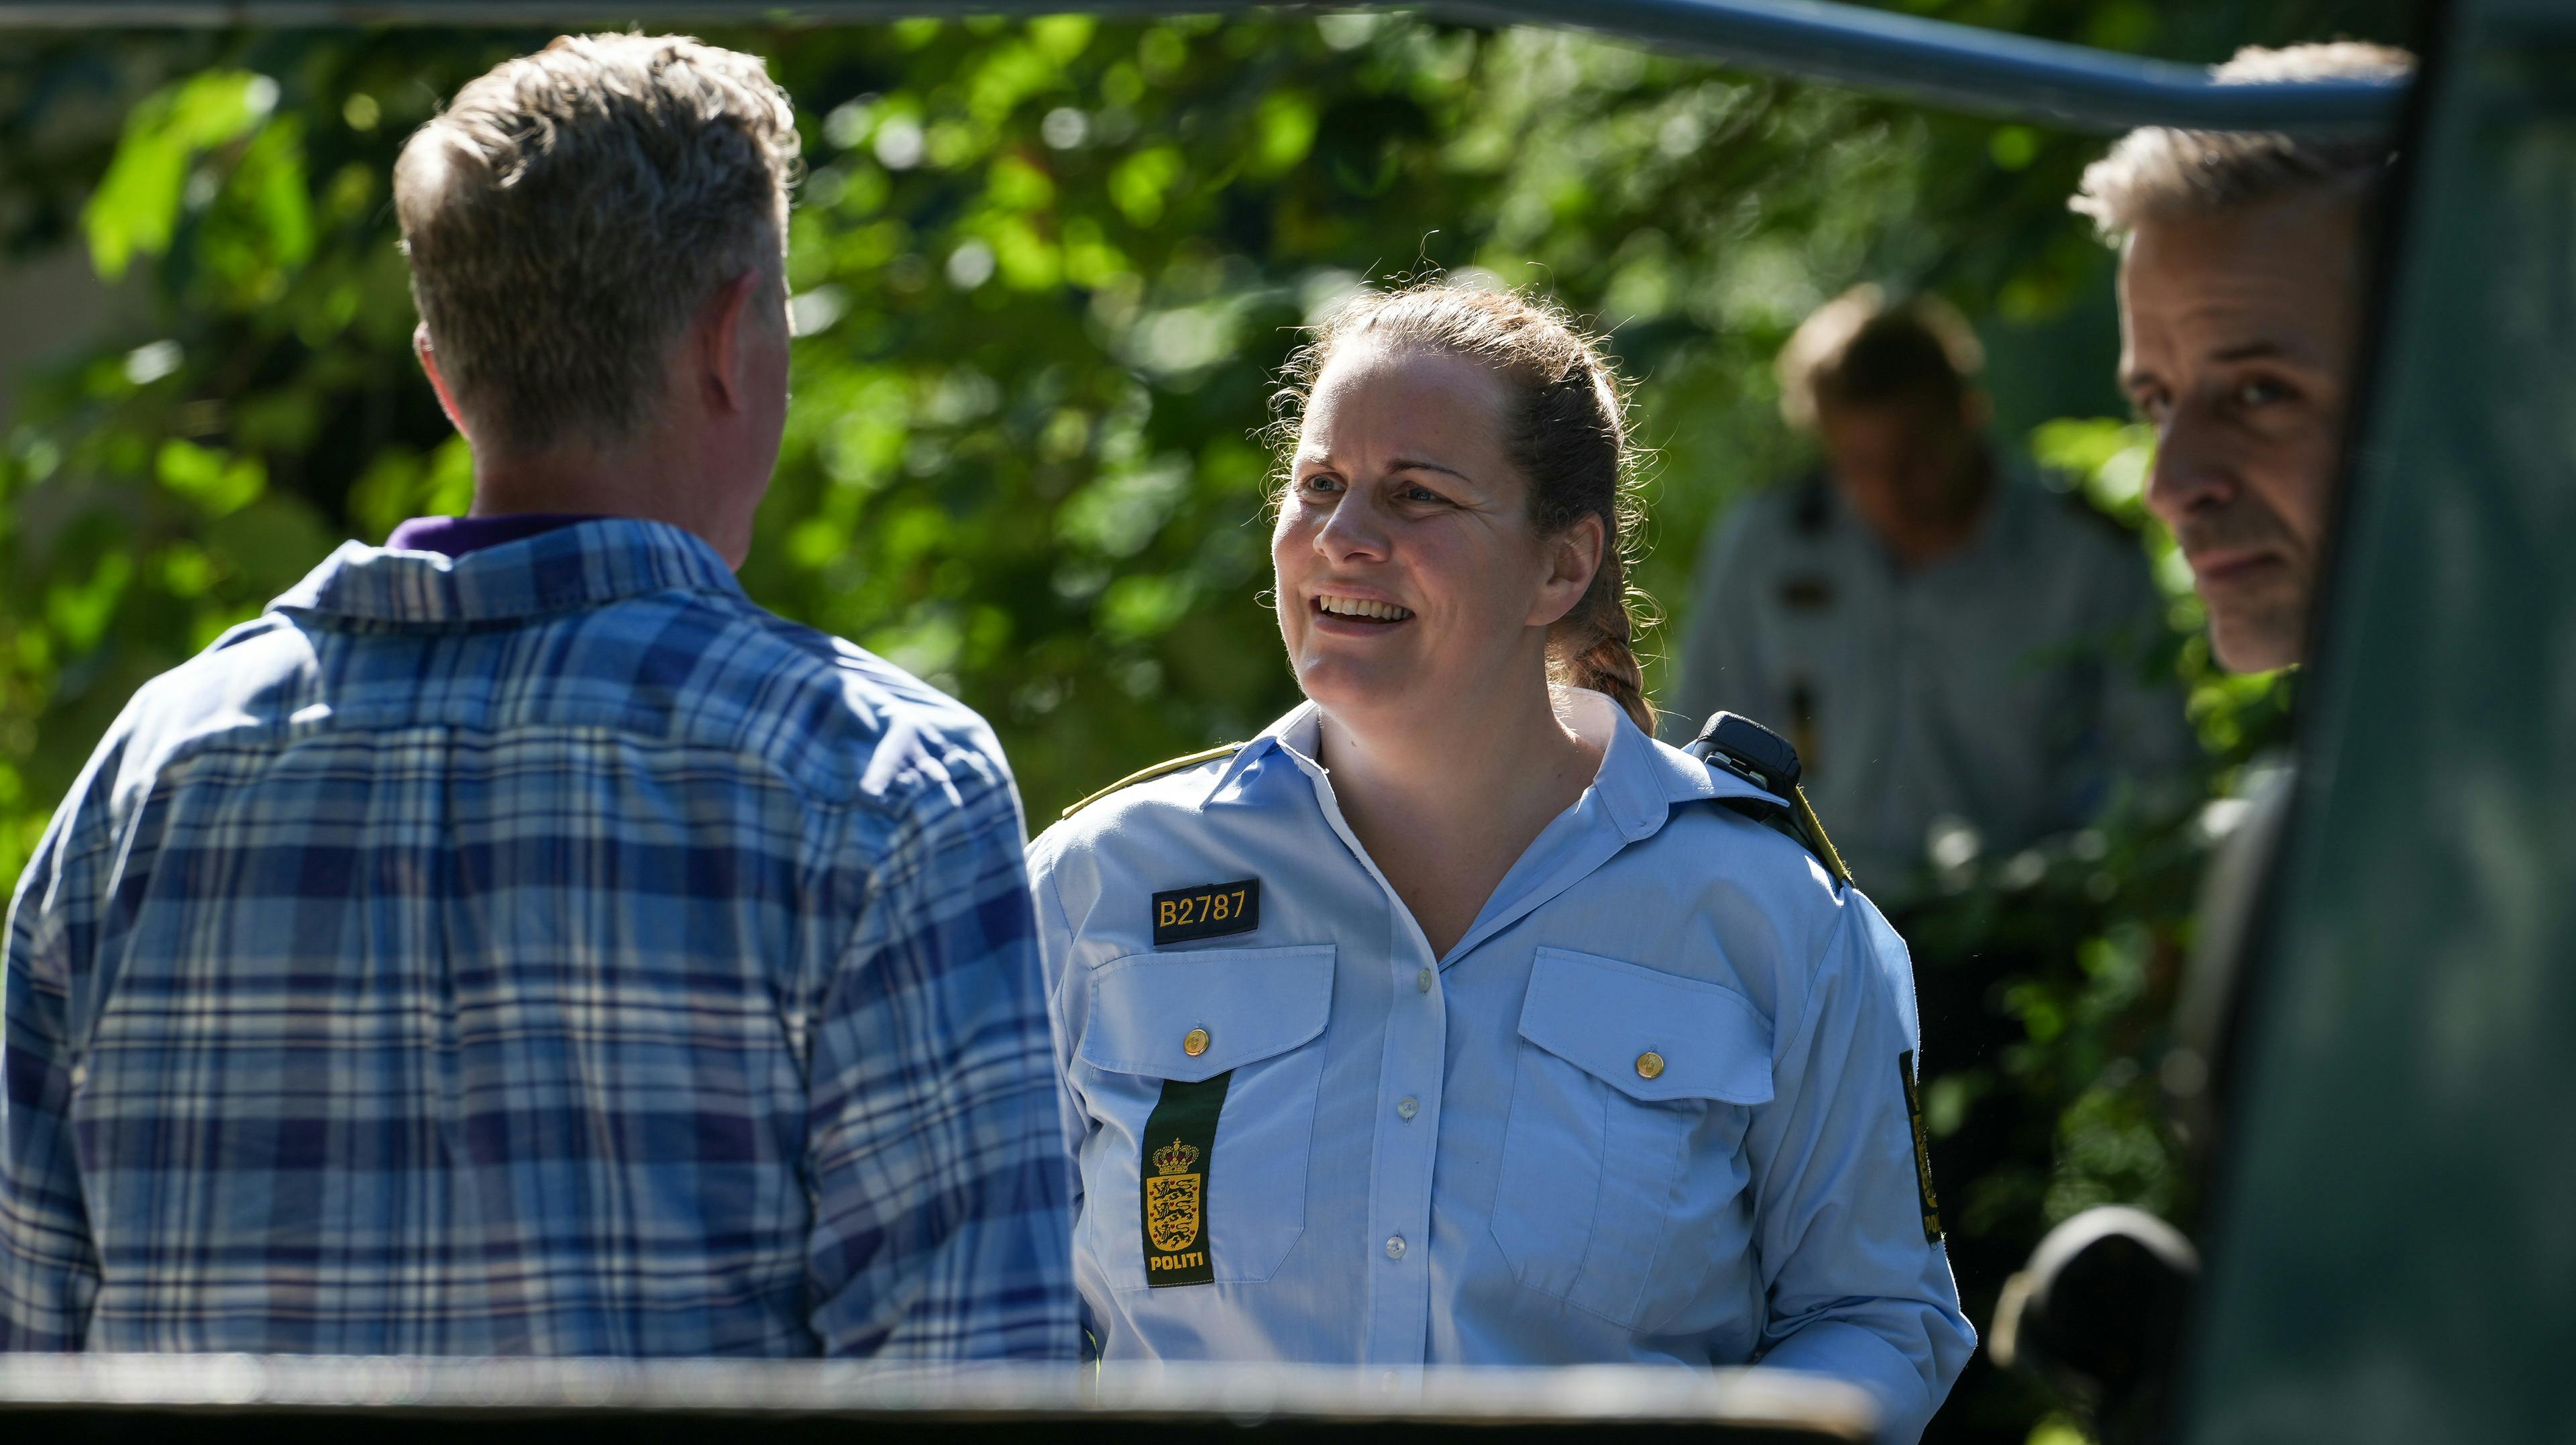 Lise Baastrups vender tilbage til TV 2 – denne gang med en rolle i den populære krimiserie "Sommerdahl", hvor hun i fjerde sæson spiller betjenten Nadia.